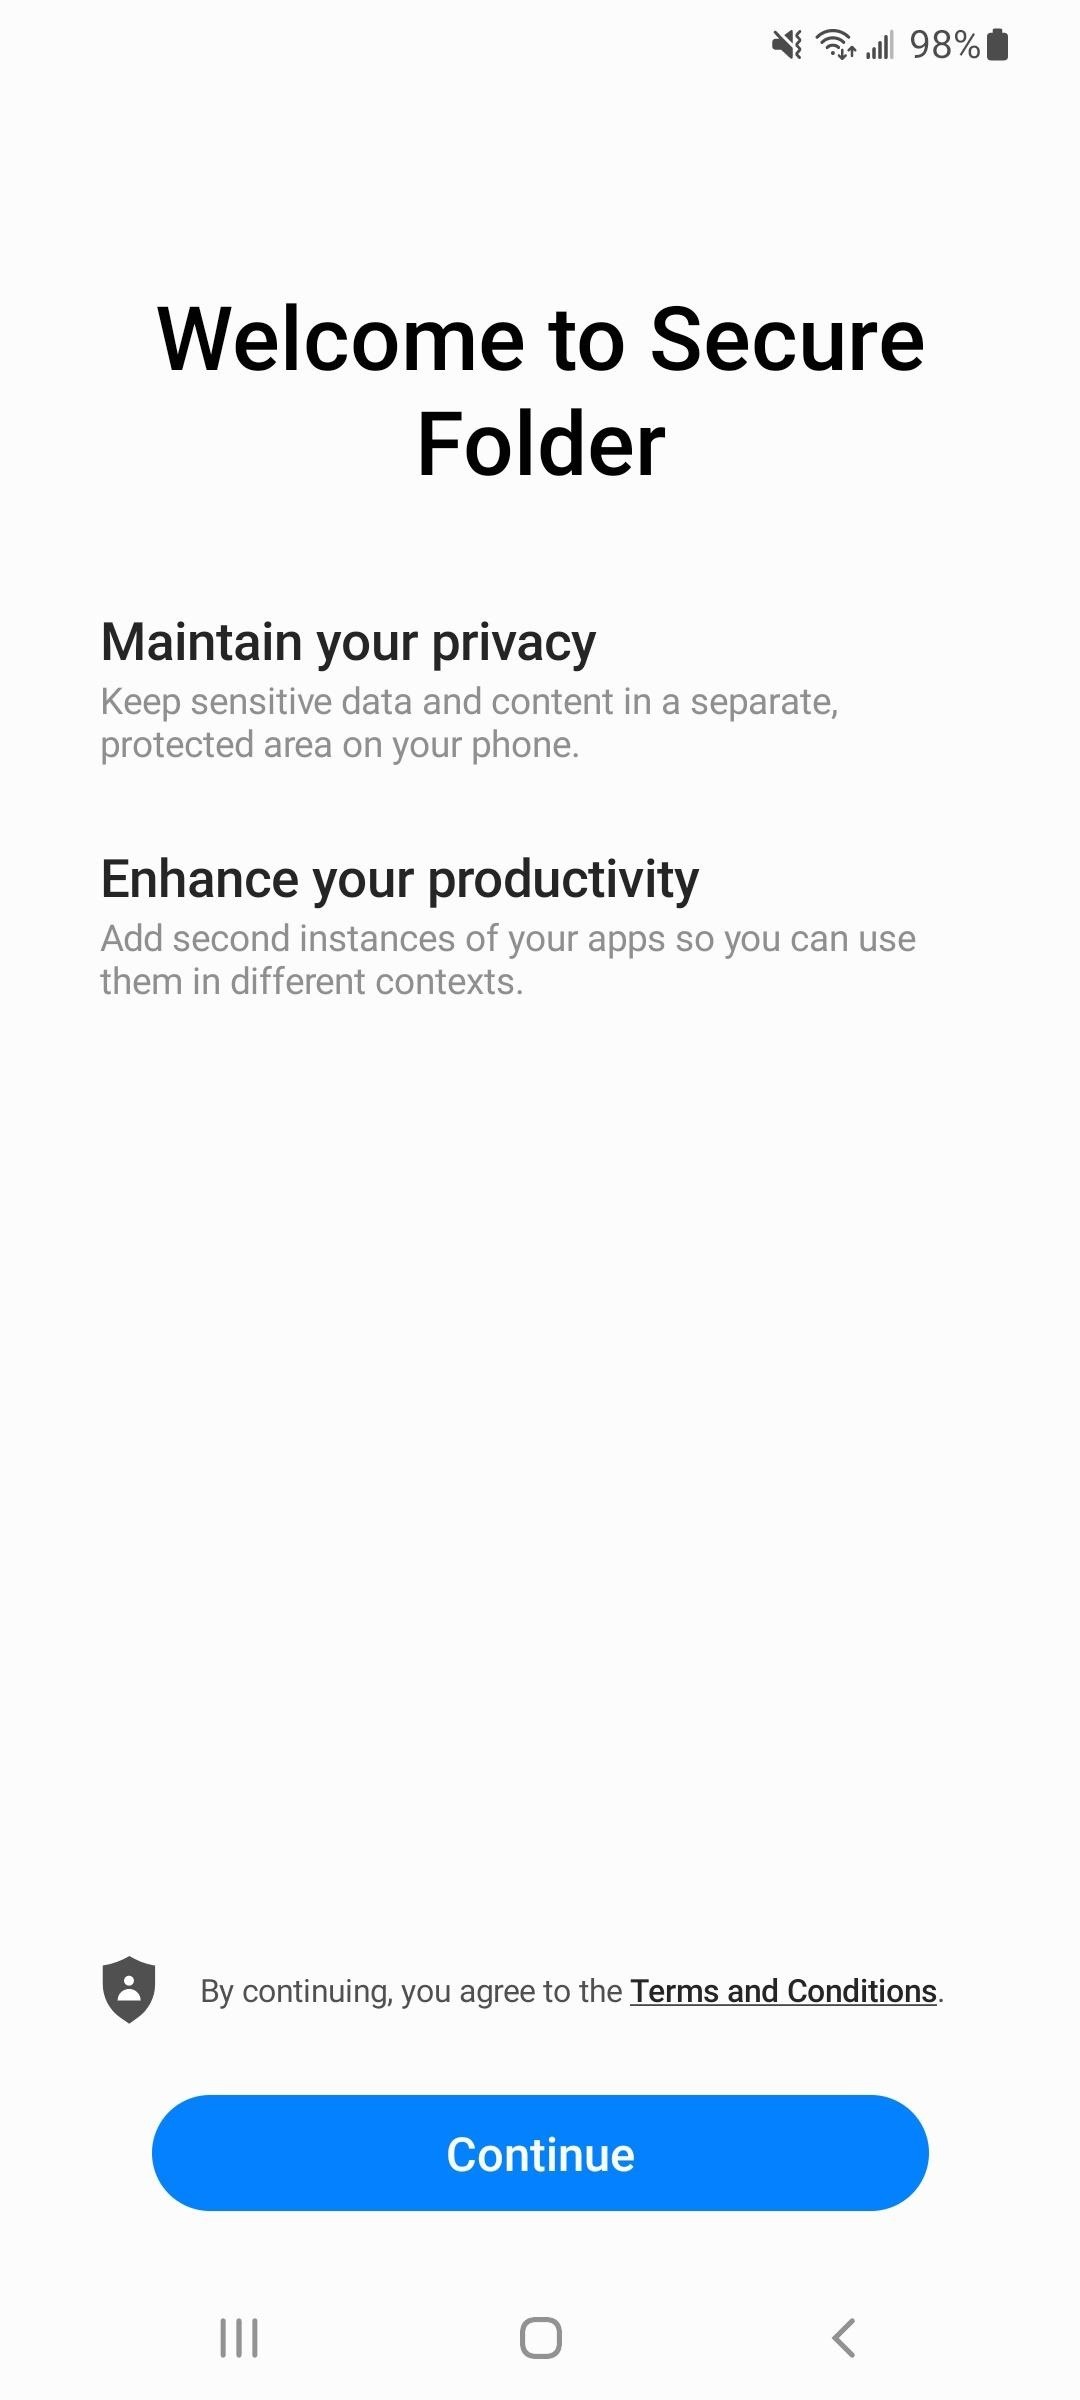 Activez Samsung Galaxy Vault pour protéger vos applications, fichiers et histoires des regards indiscrets et des pirates